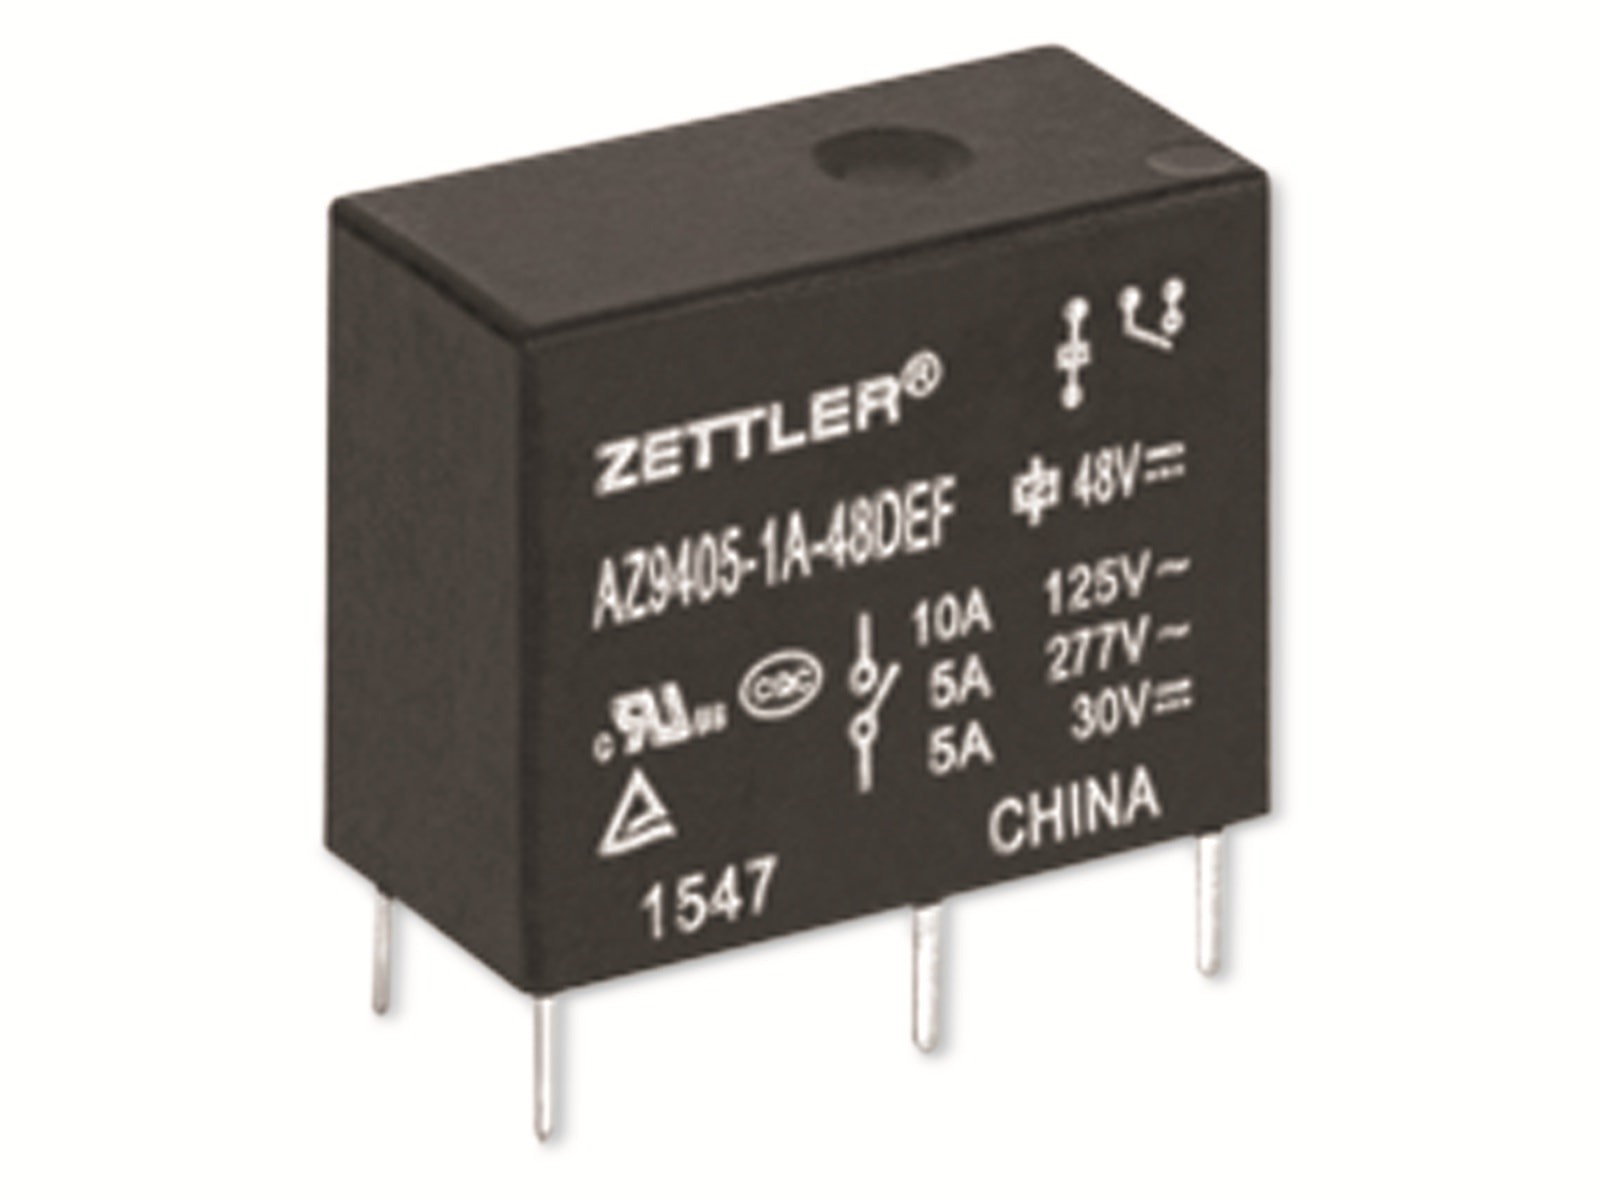 ZETTLER Printrelais, AZ9405-1C-12DSEF, 12V, 1 Wechsler, 30V/DC, THT